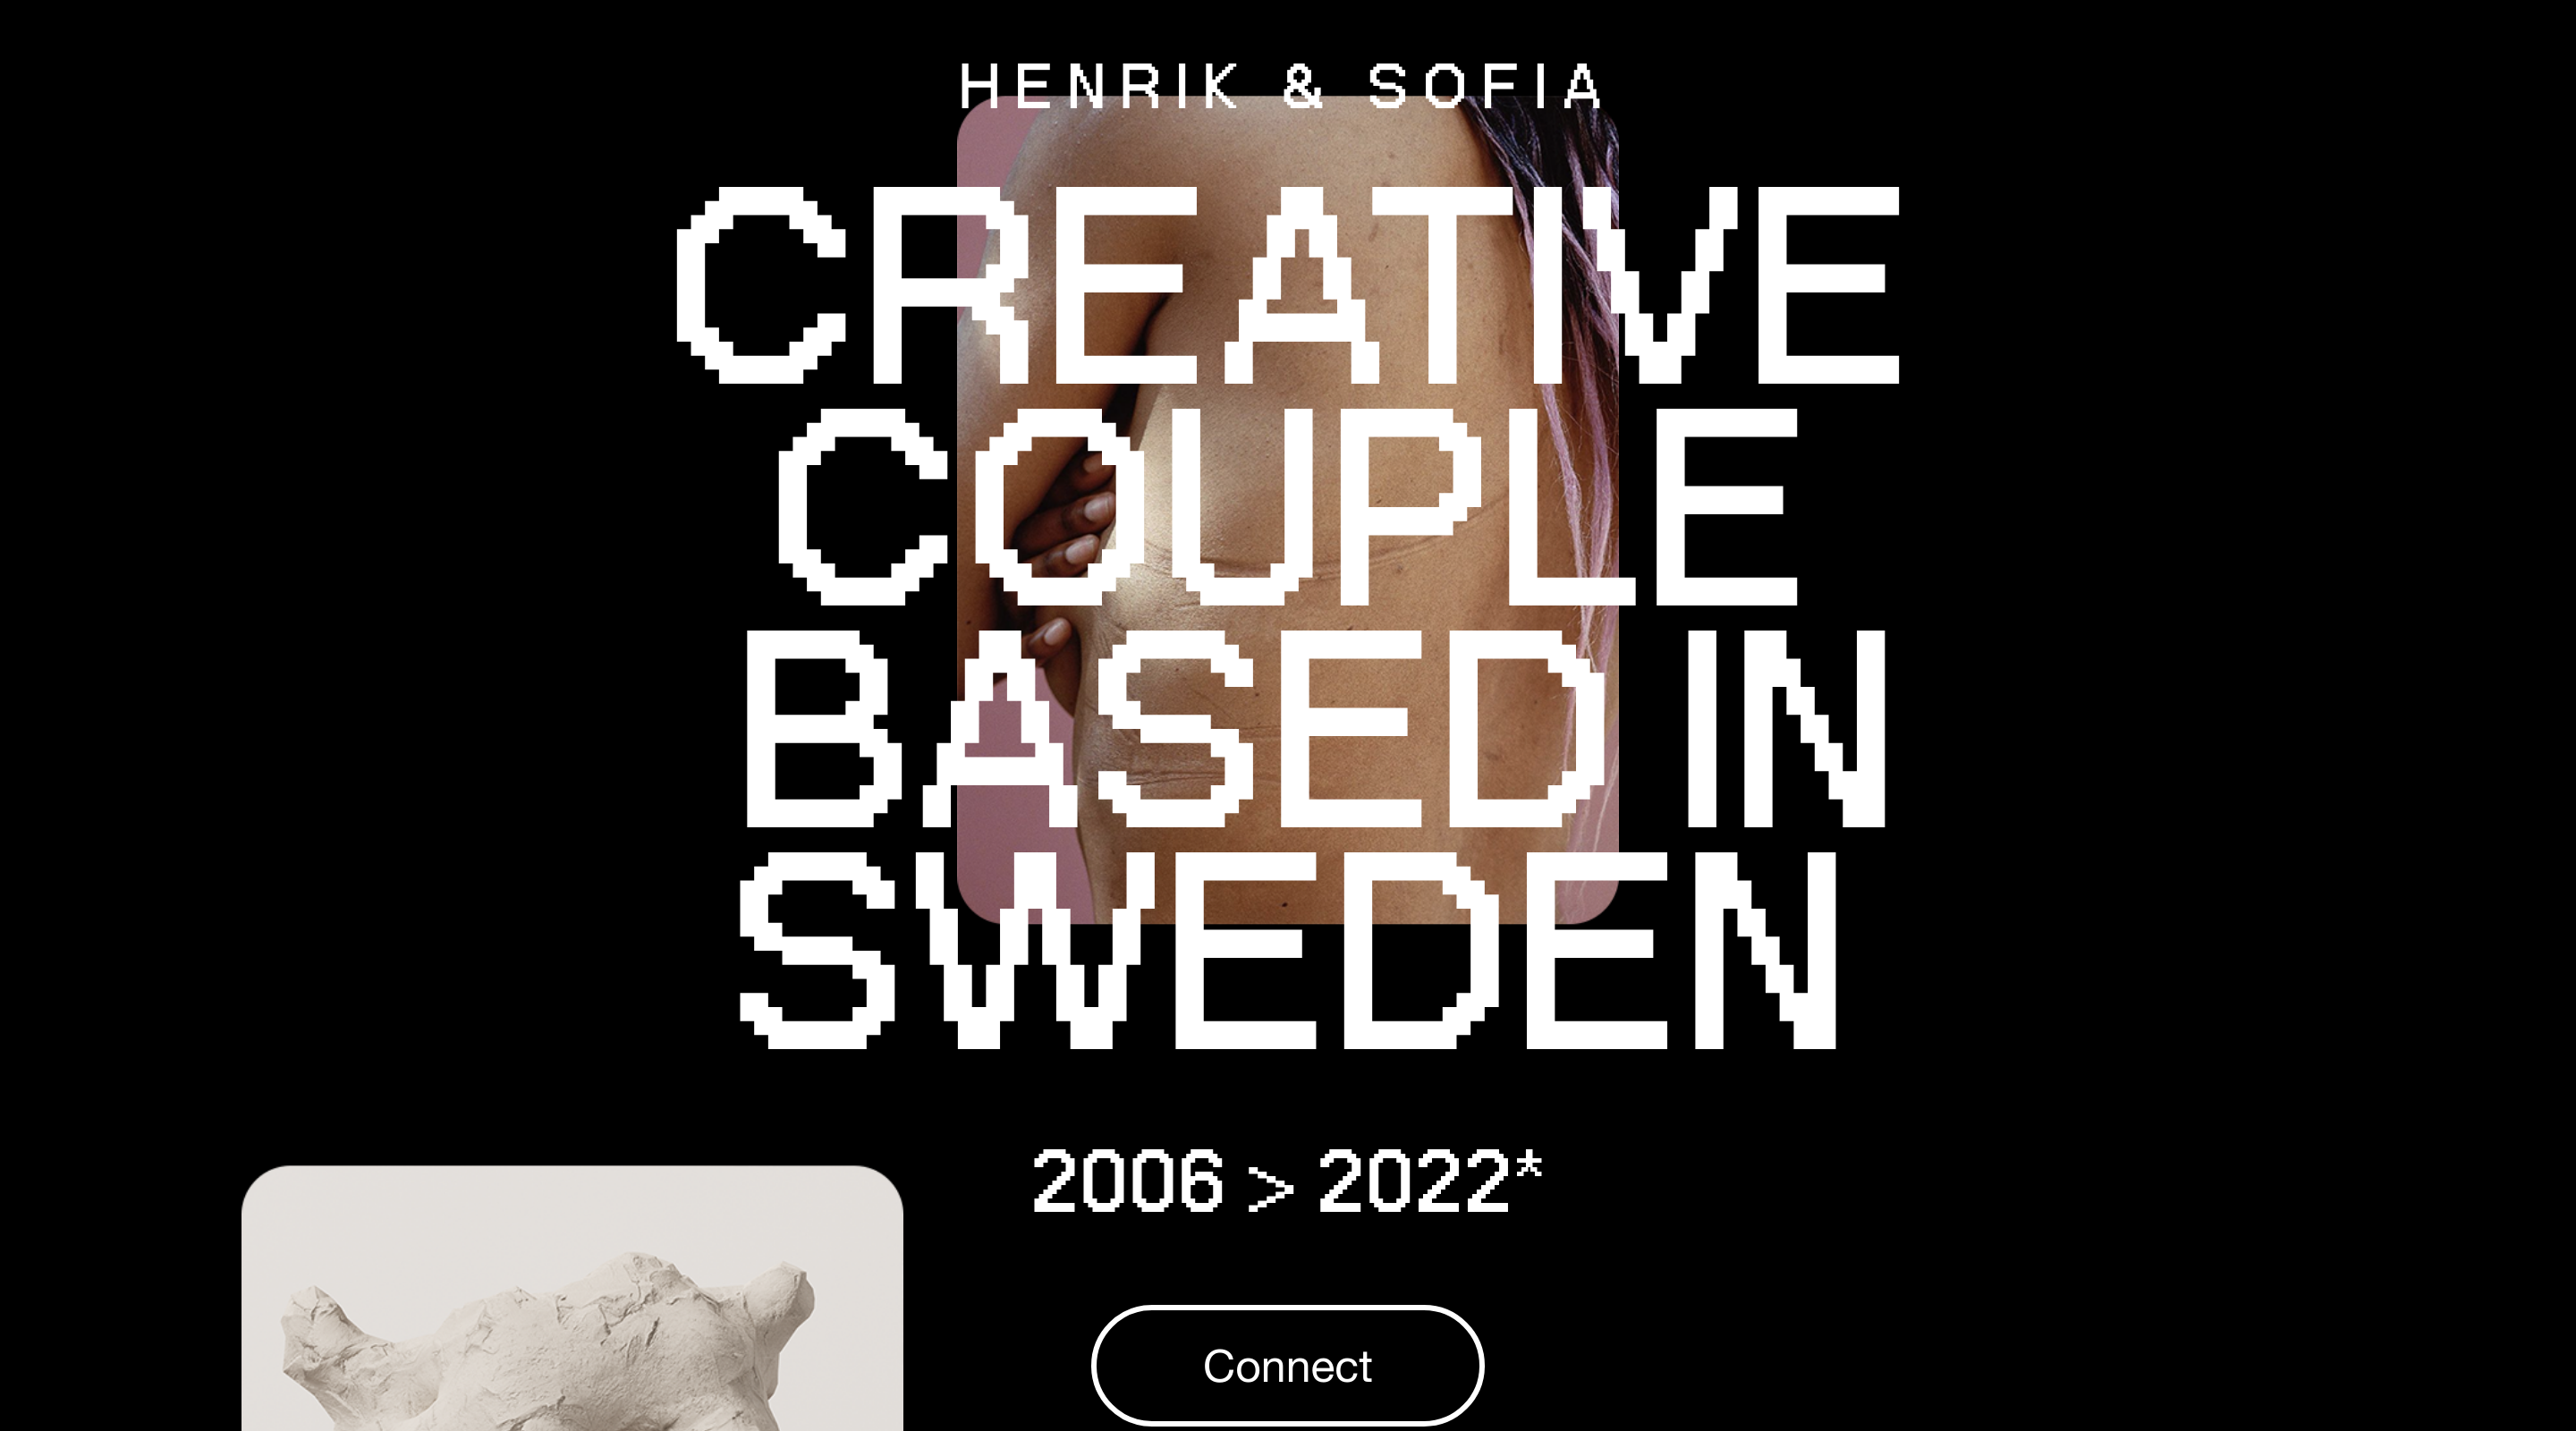 Henrik & Sofia website